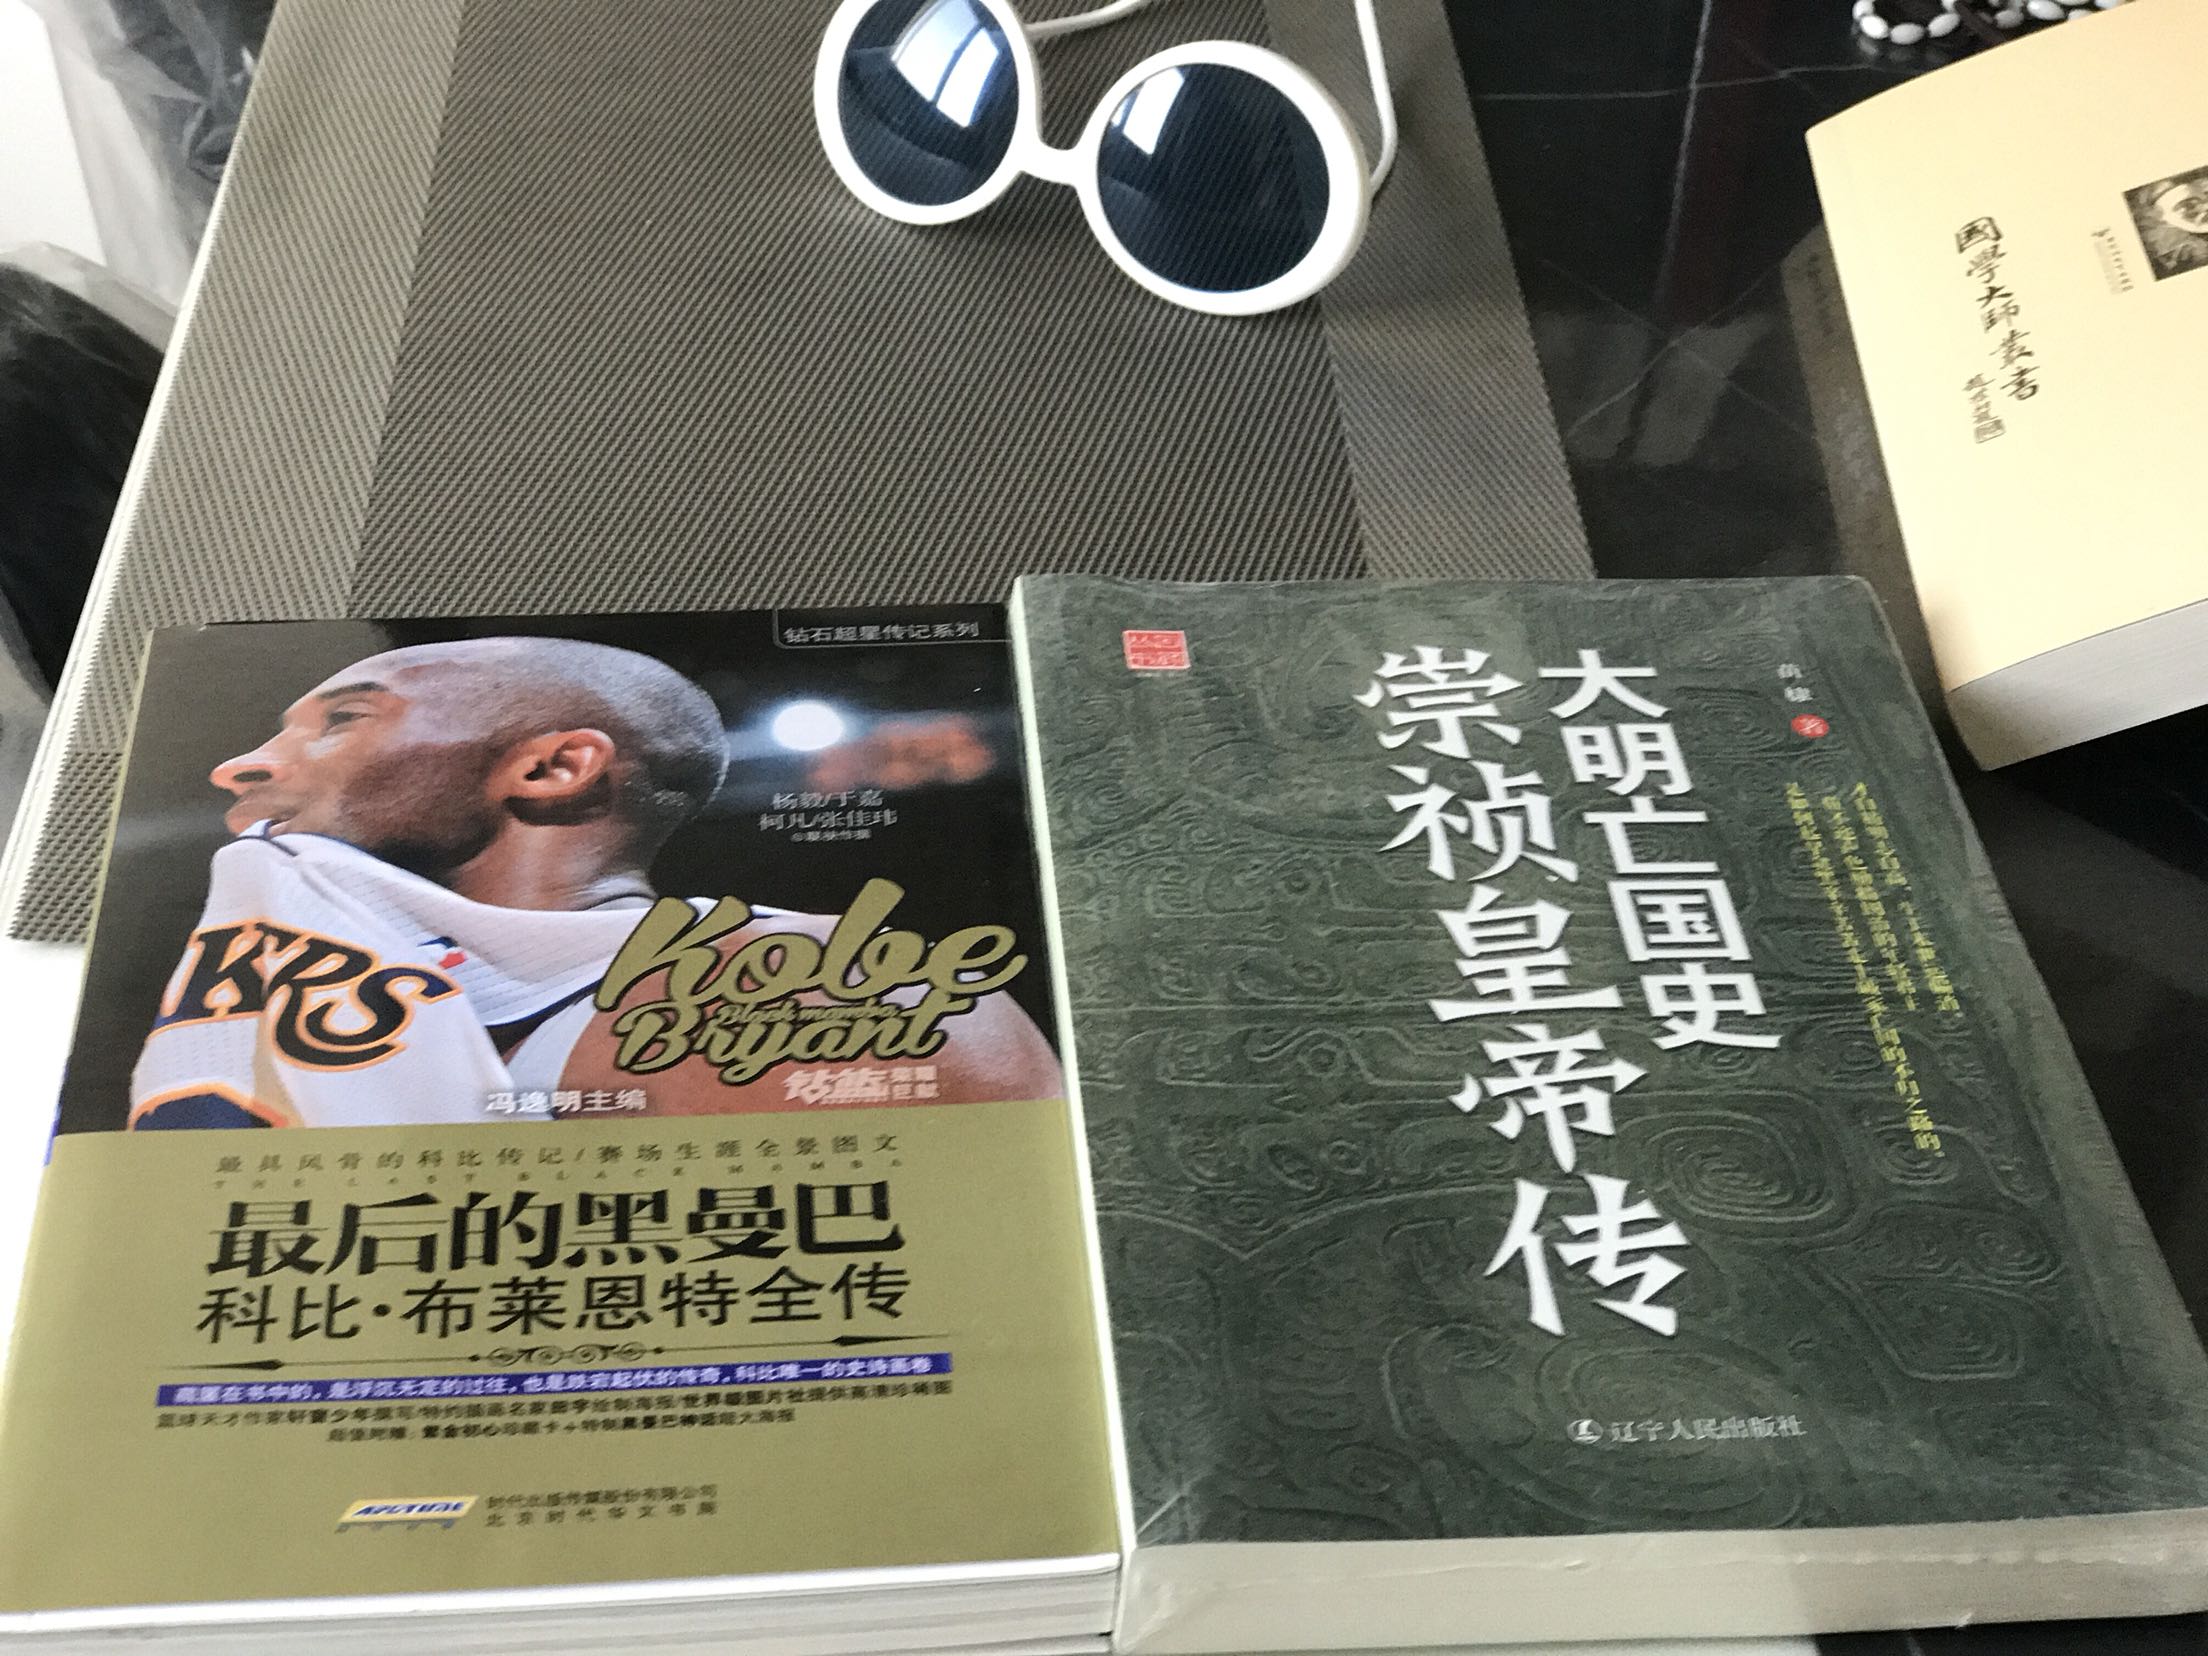 买书优惠力度很大，Kobe也是偶一直稀饭滴励志偶像！